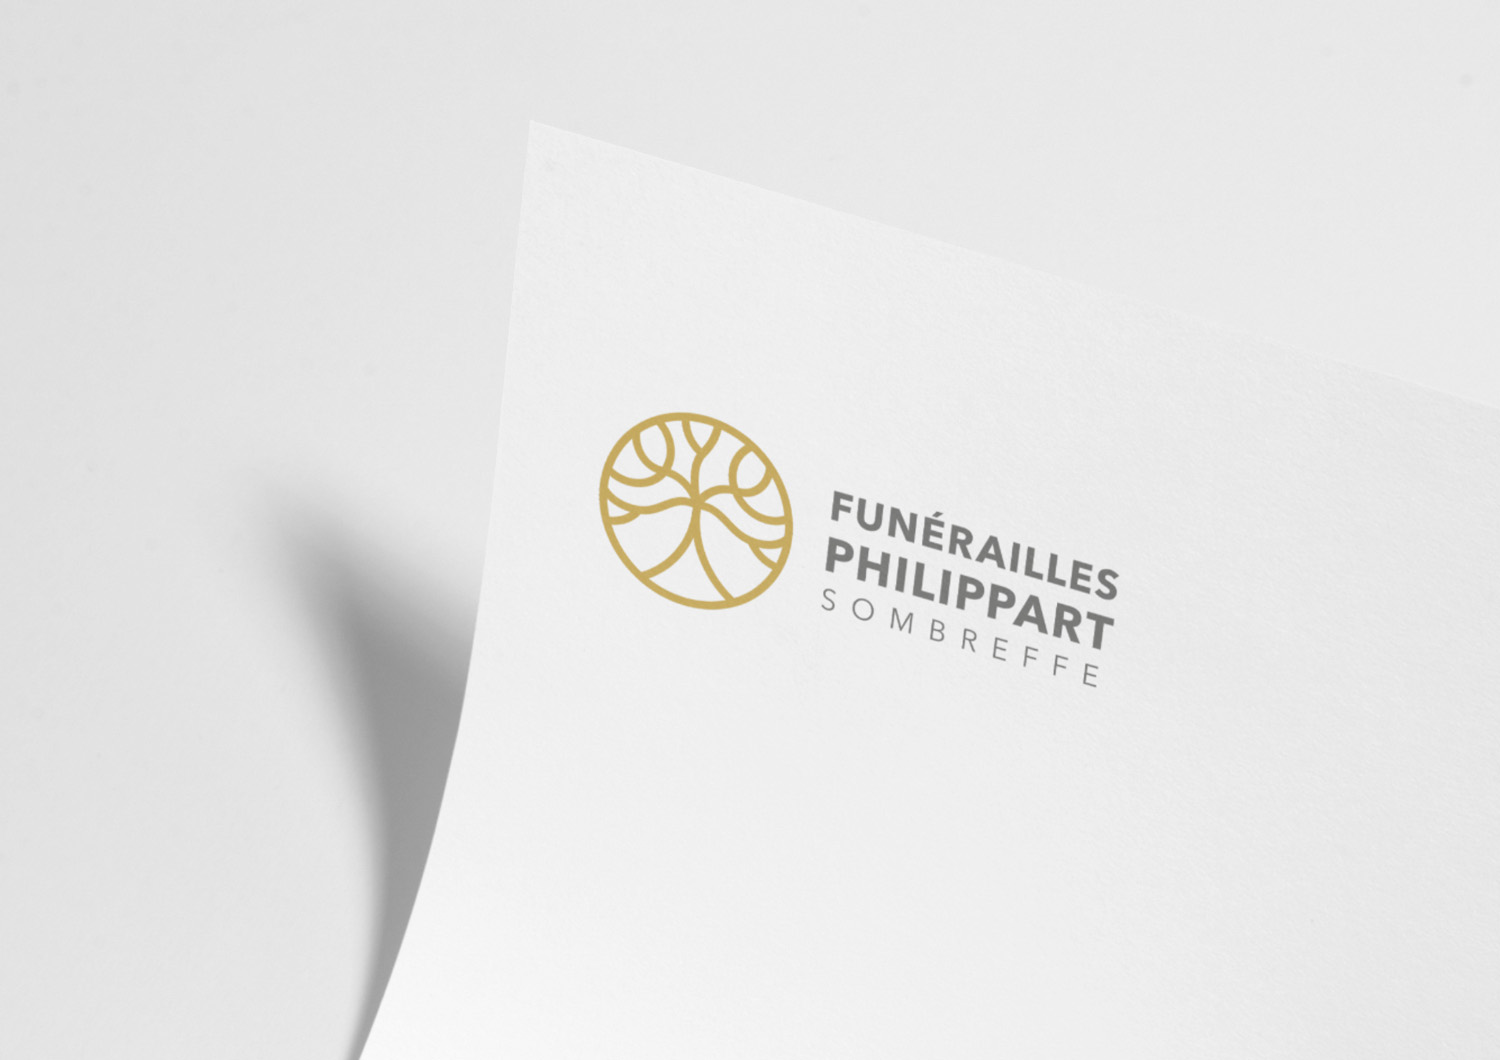 funerailles philippart logo